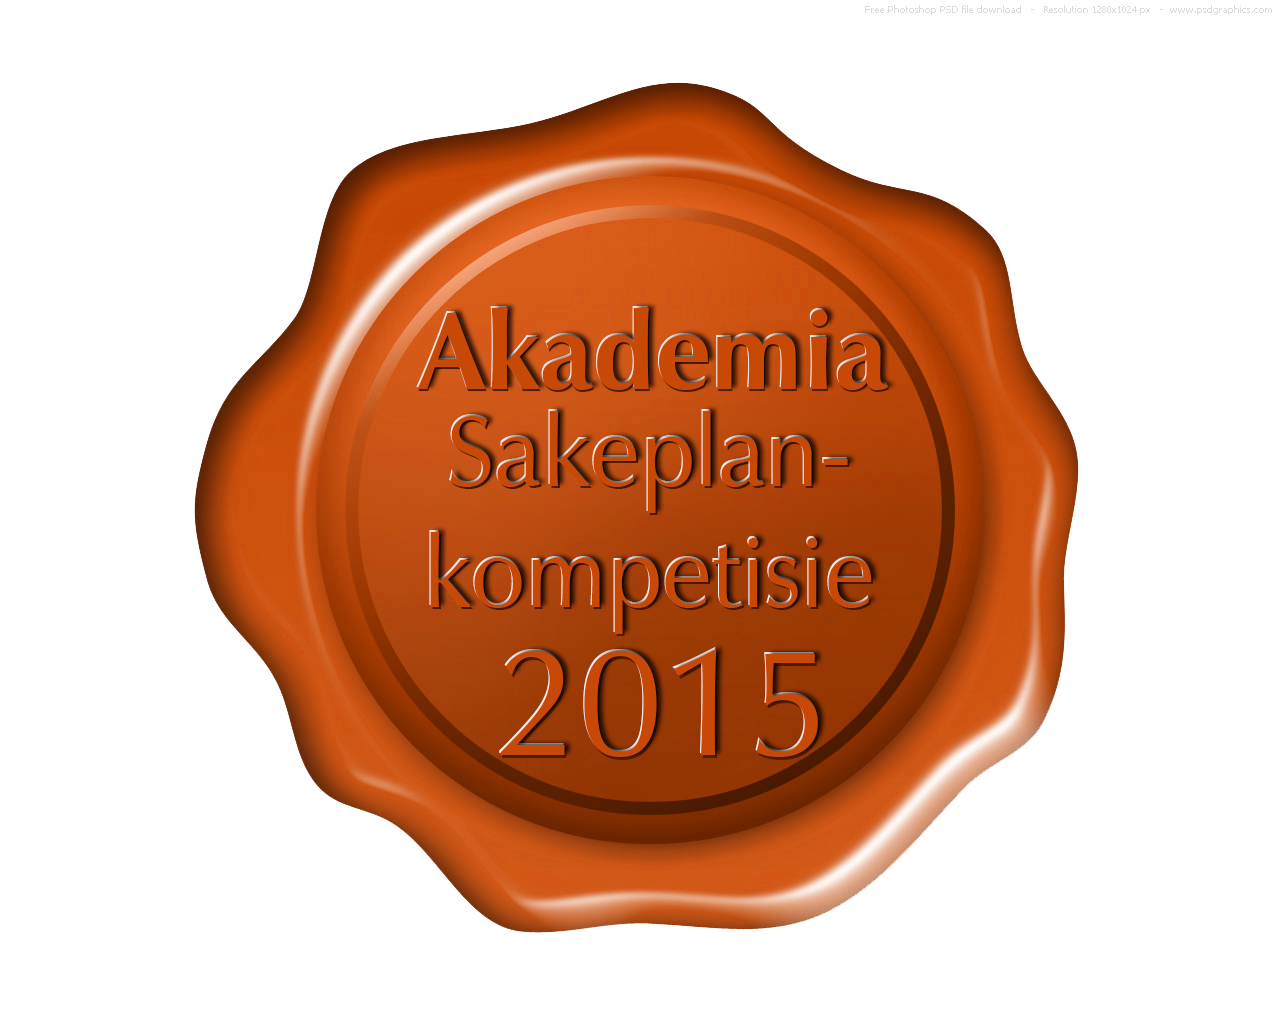 Peri-Peri-Creative-Akademia-Sakeplankompetisie-2015-logo concept5